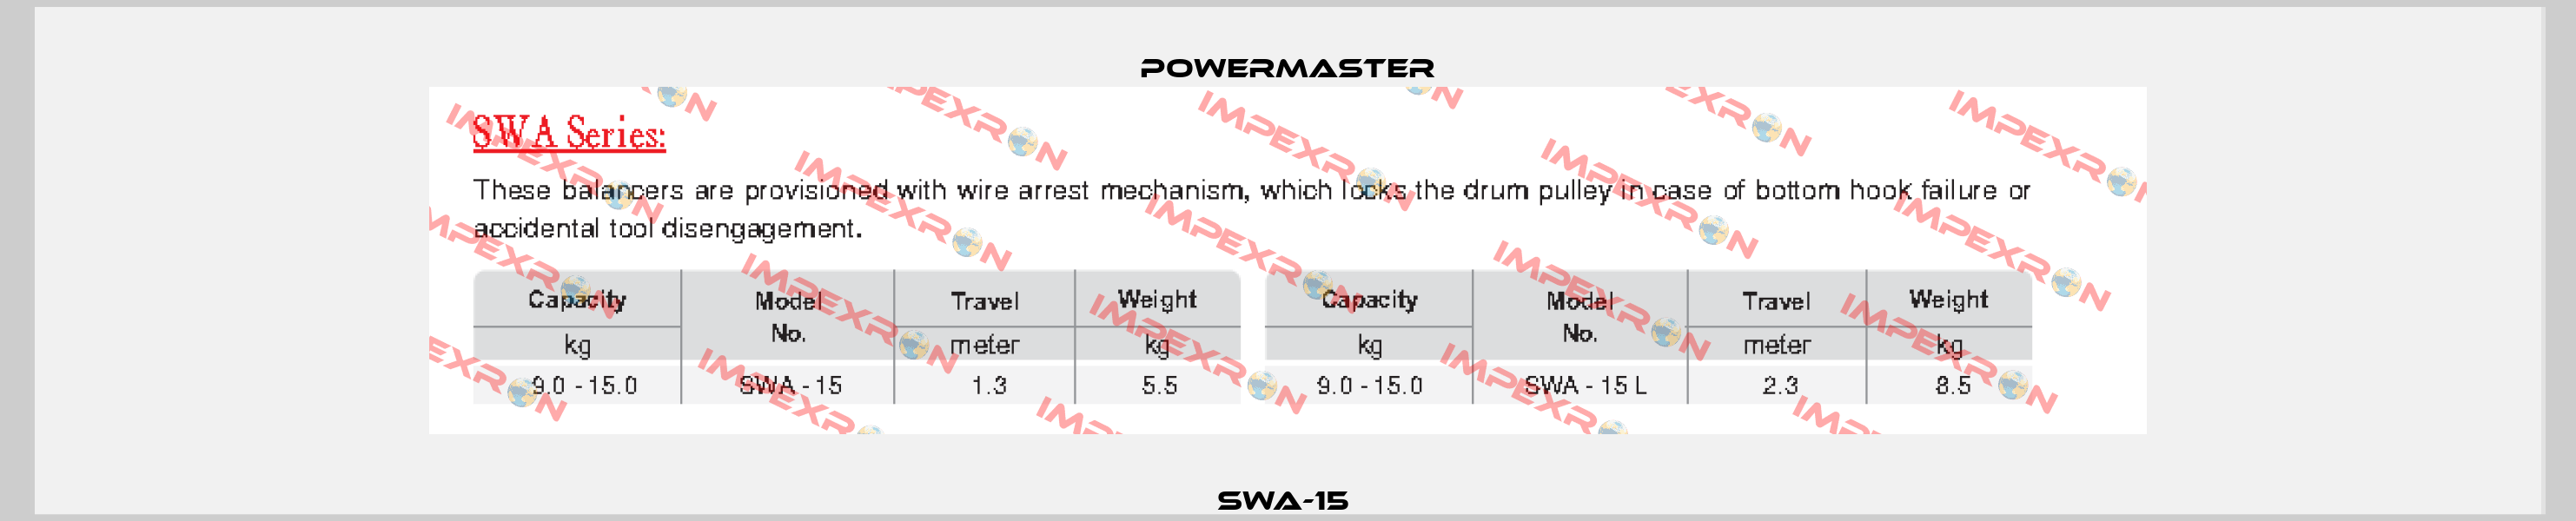 SWA-15  POWERMASTER